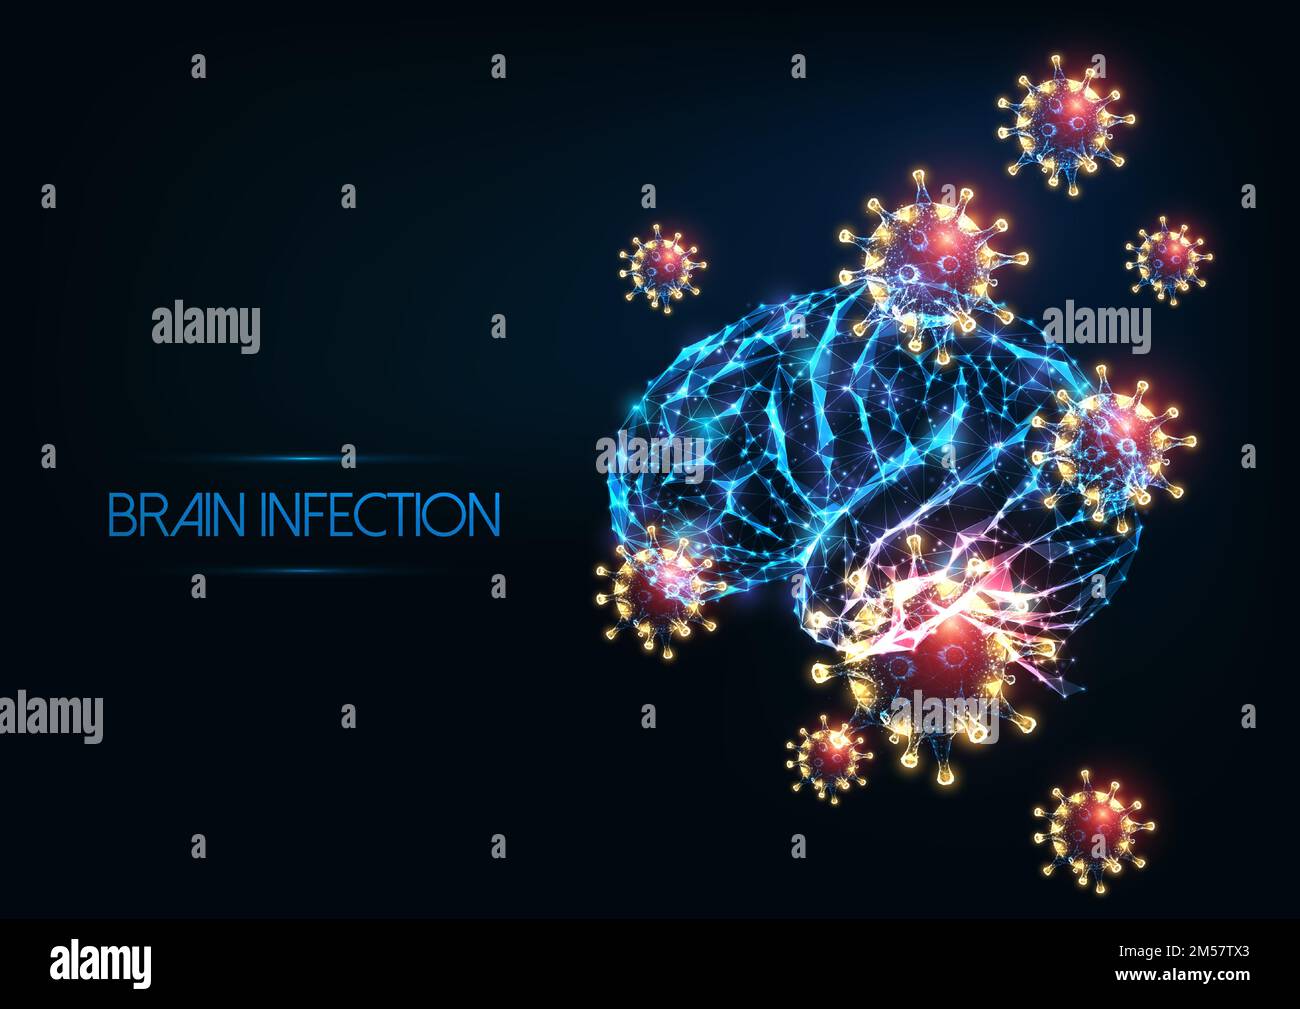 Futuristische Hirninfektion Meningitis, Enzephalitis-Konzept mit leuchtend niedrig polygonalem menschlichen Gehirn und Viruszellen auf dunkelblauem Hintergrund. Moderne wir Stock Vektor